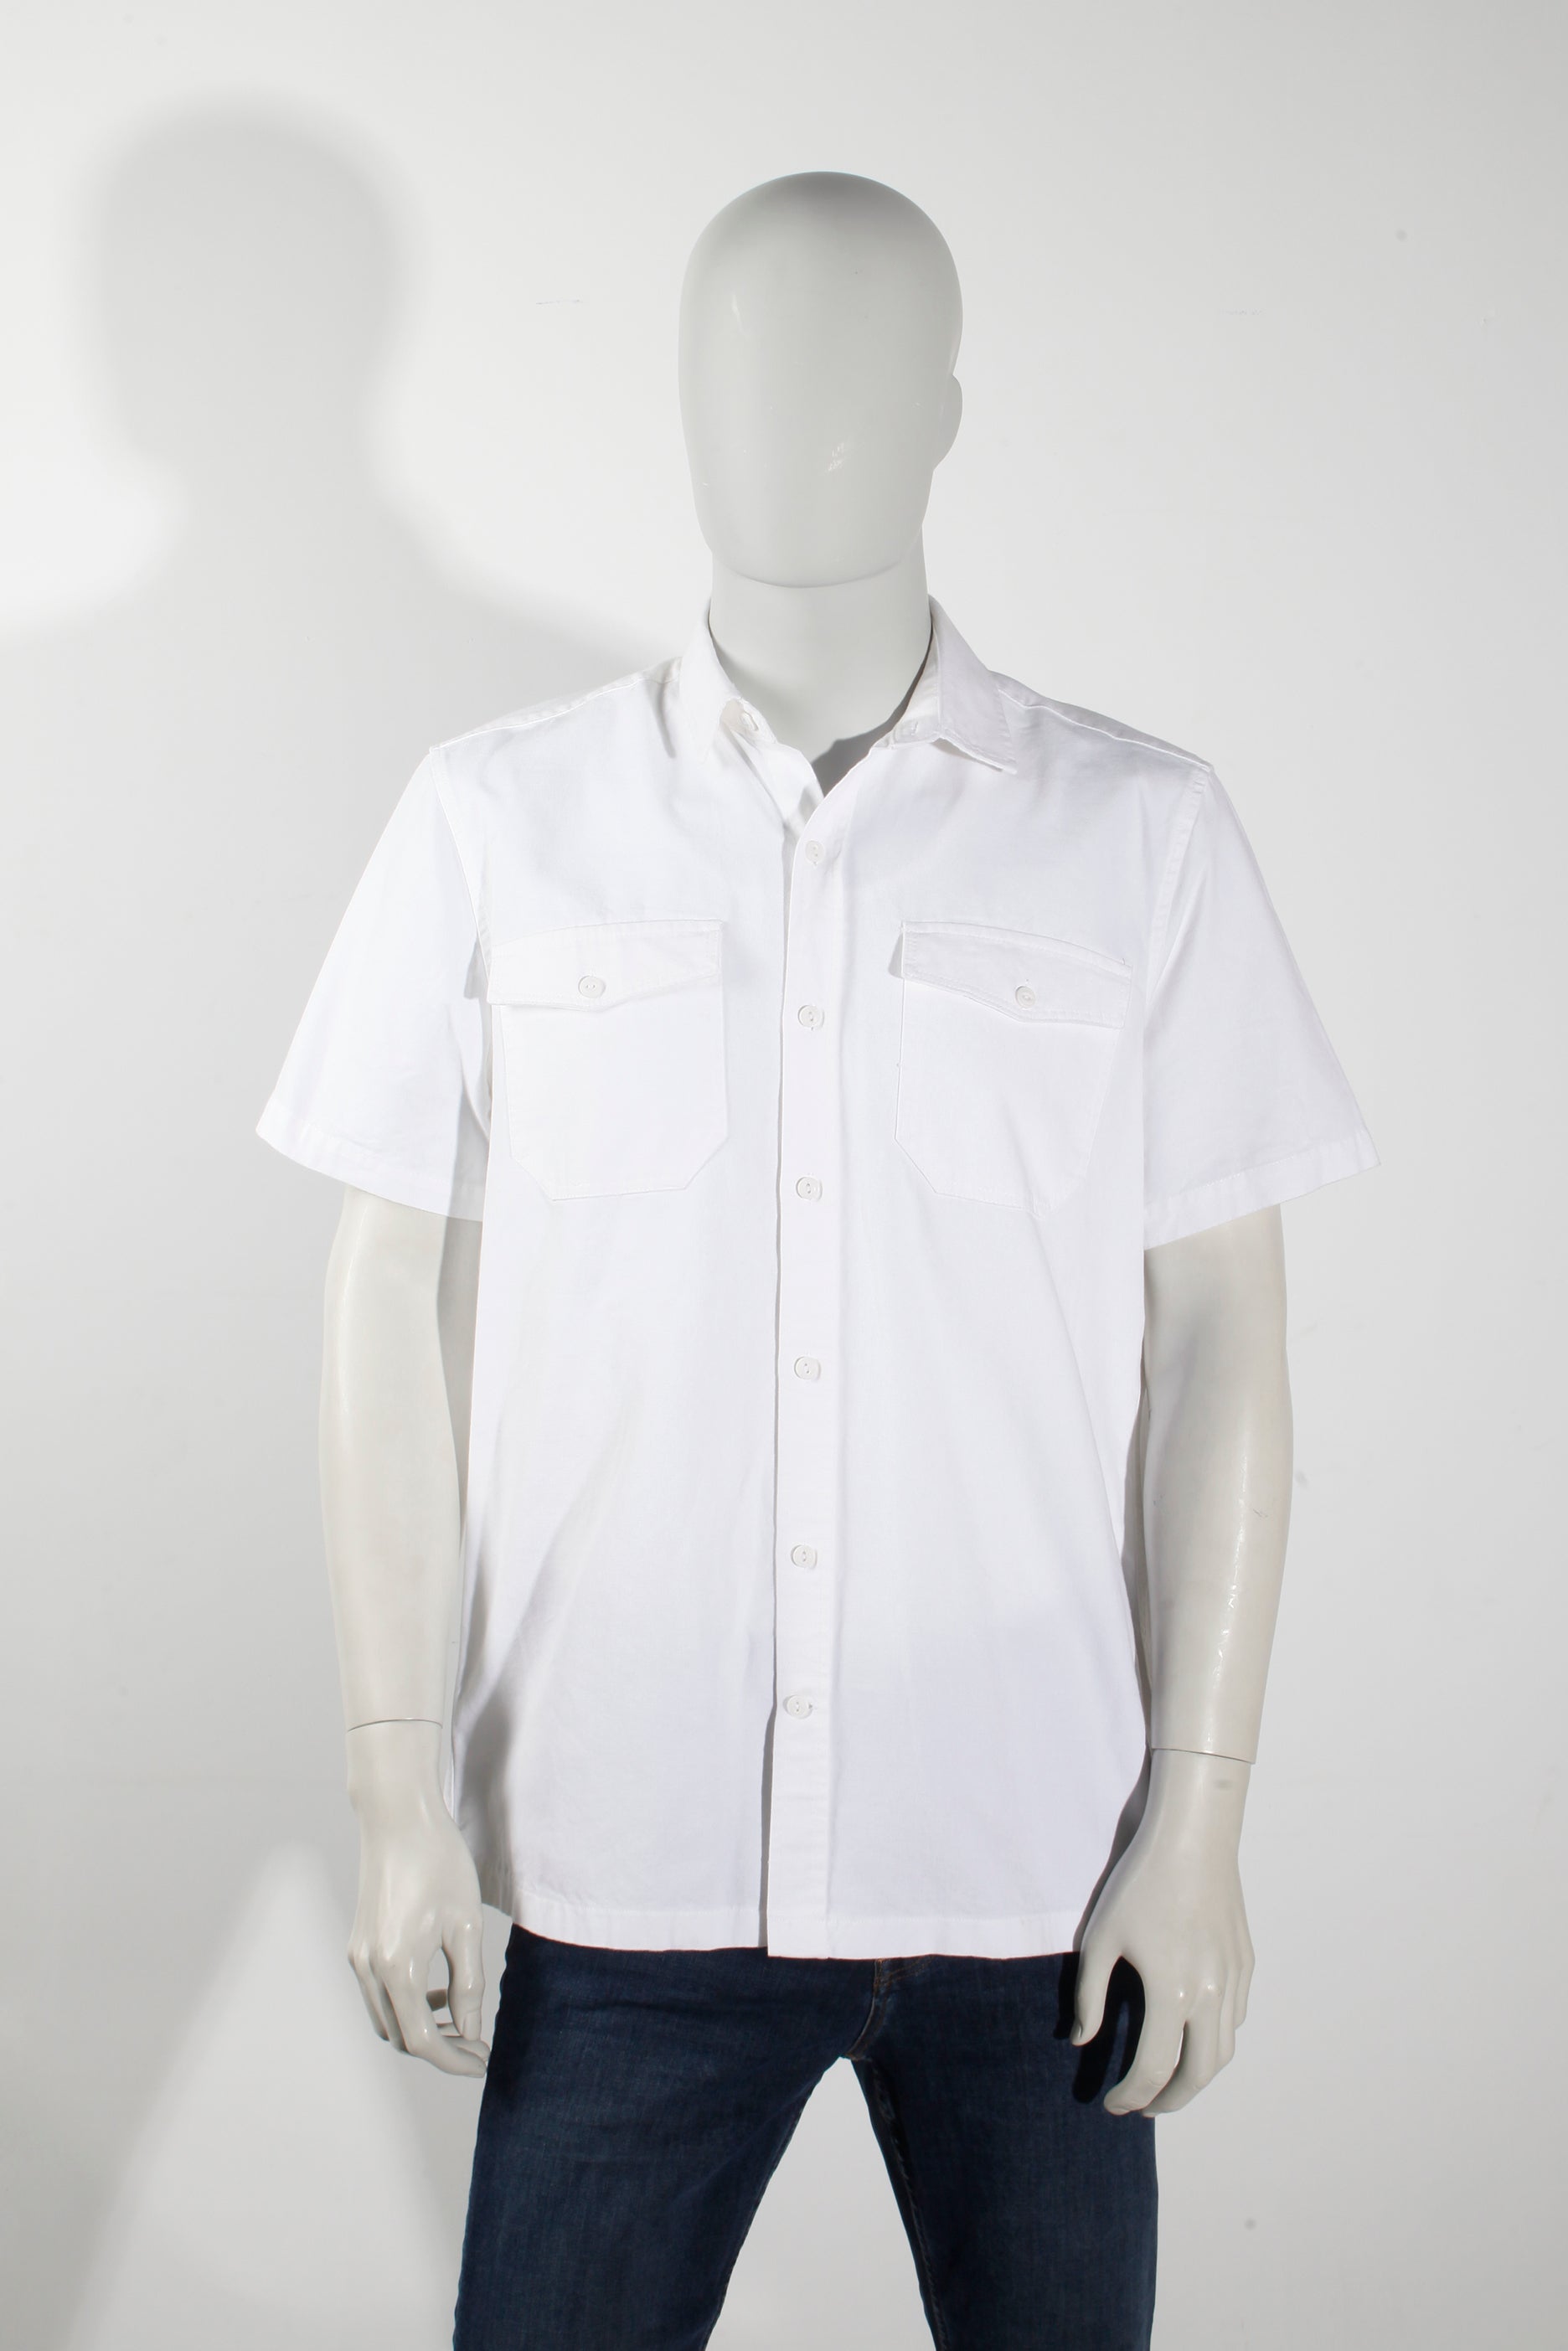 Men's White Short-Sleeved Shirt (Medium)